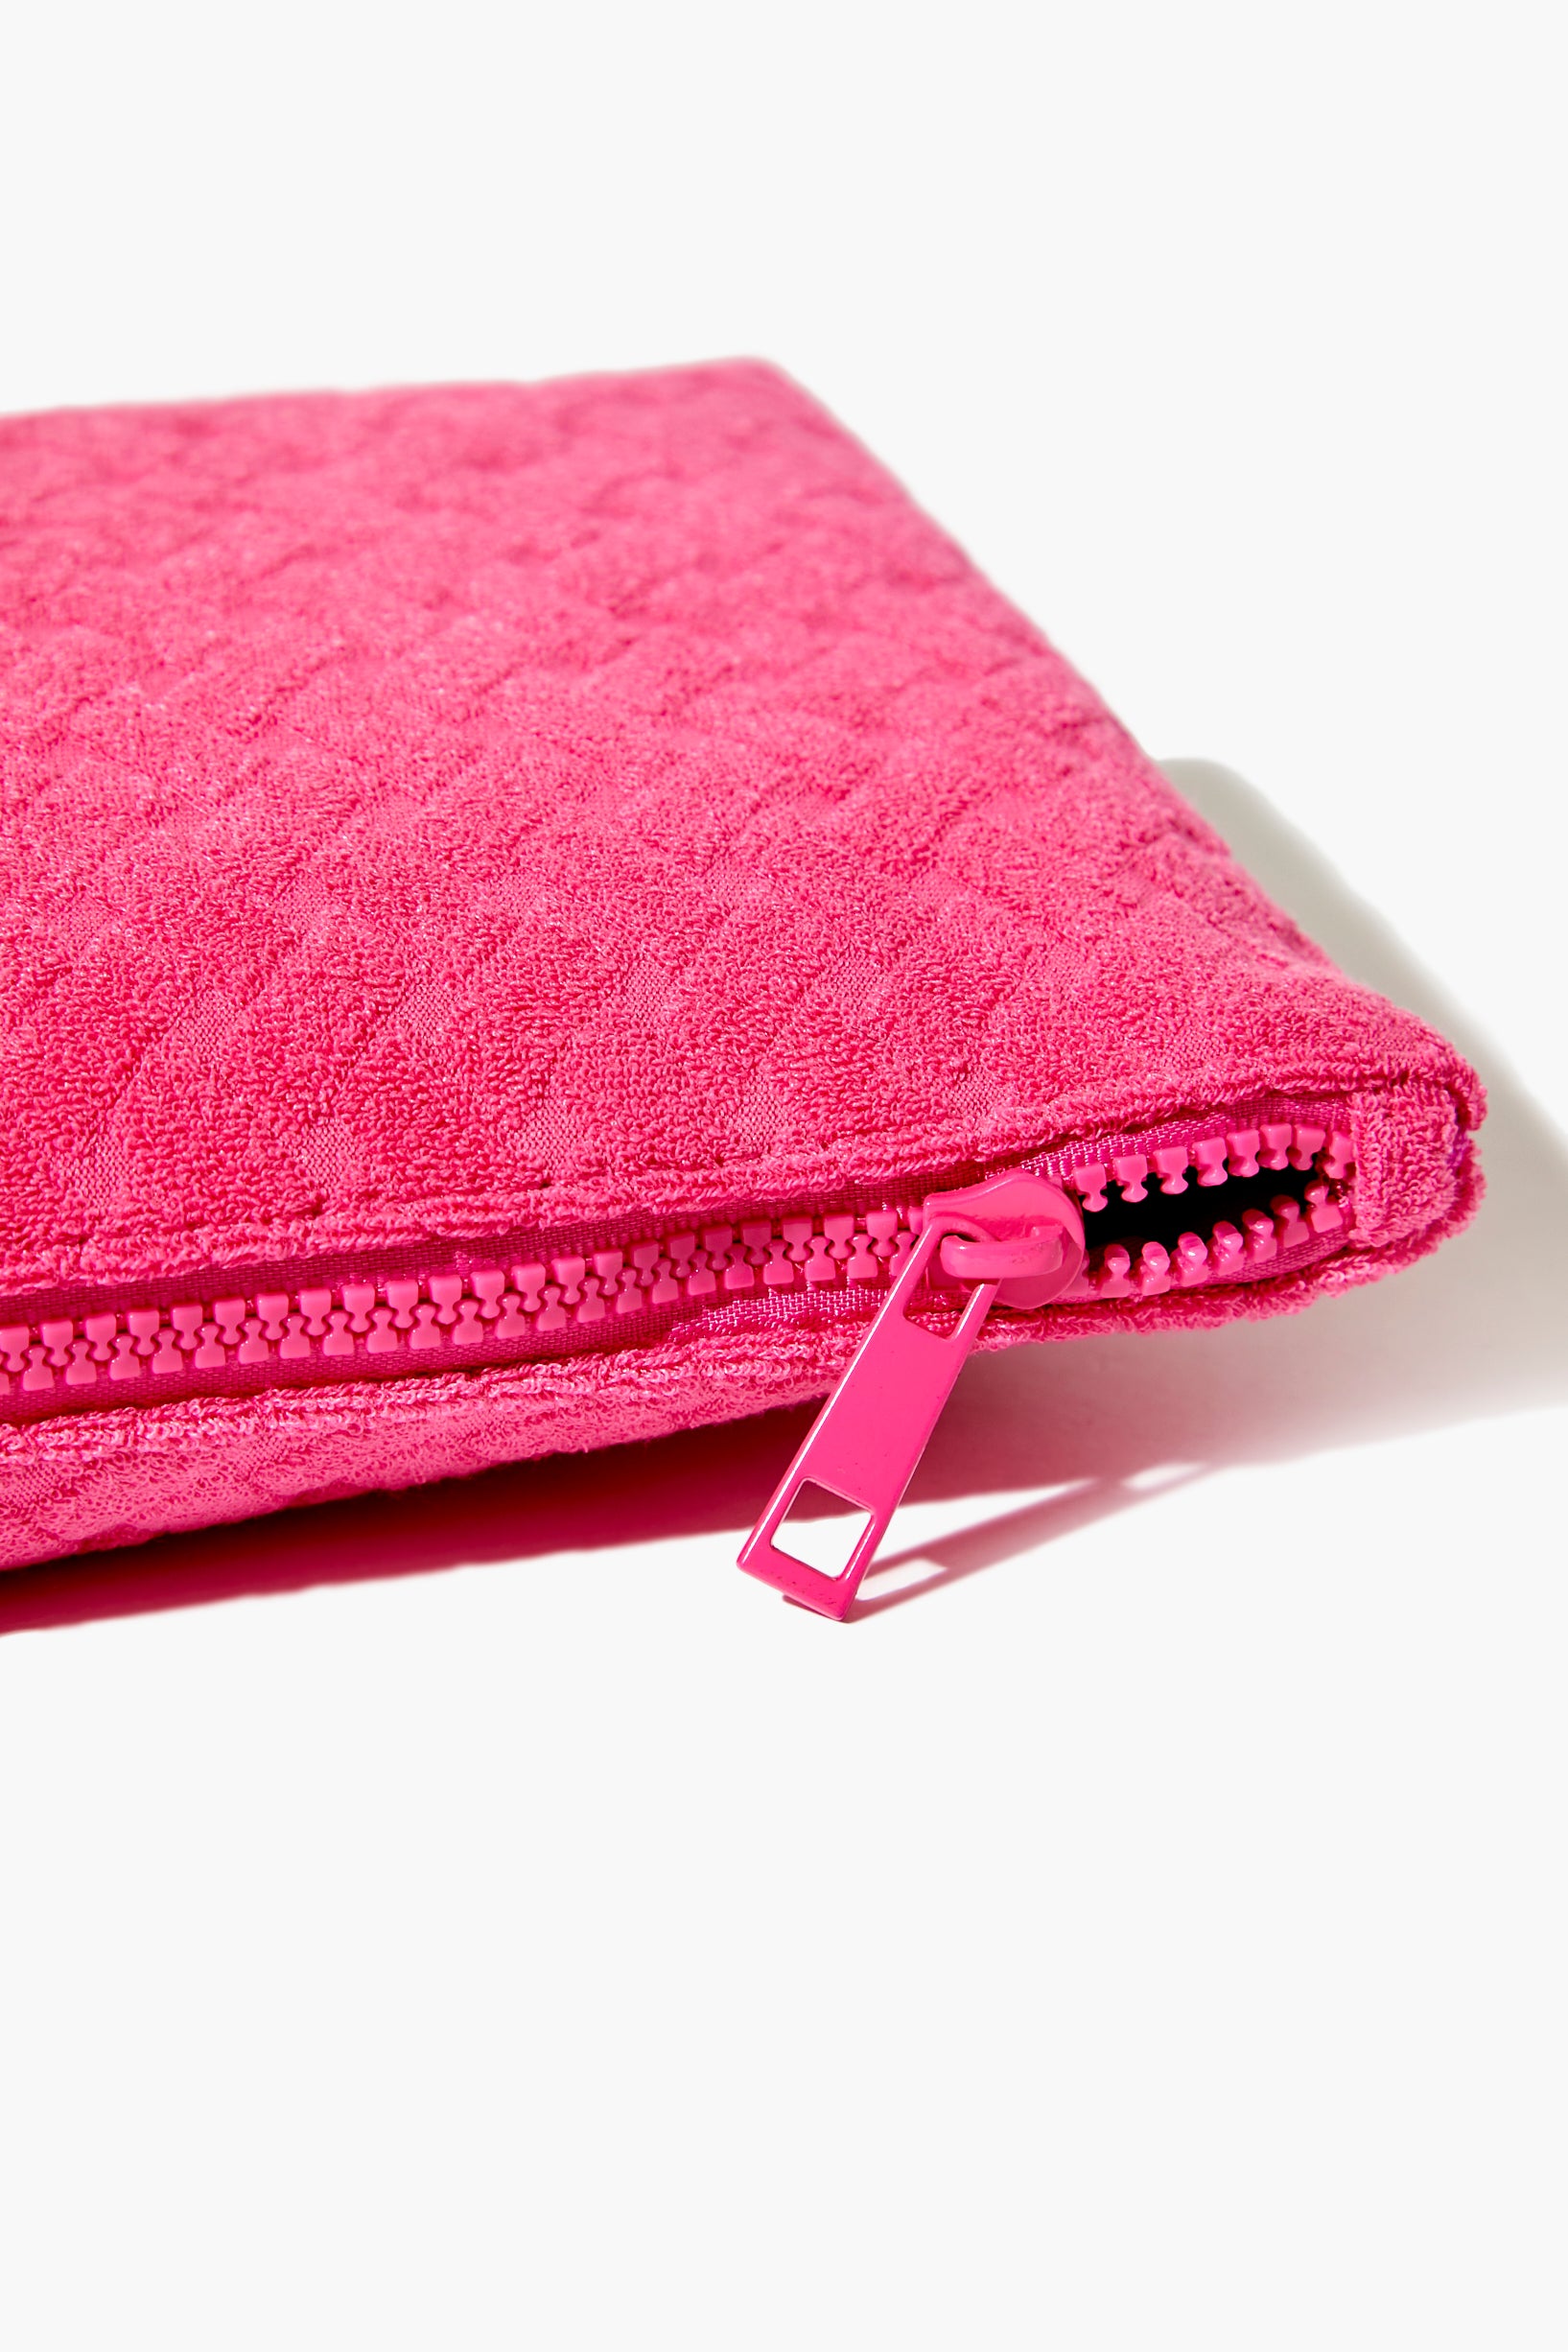 Hot Pink Textured Makeup Bag 2